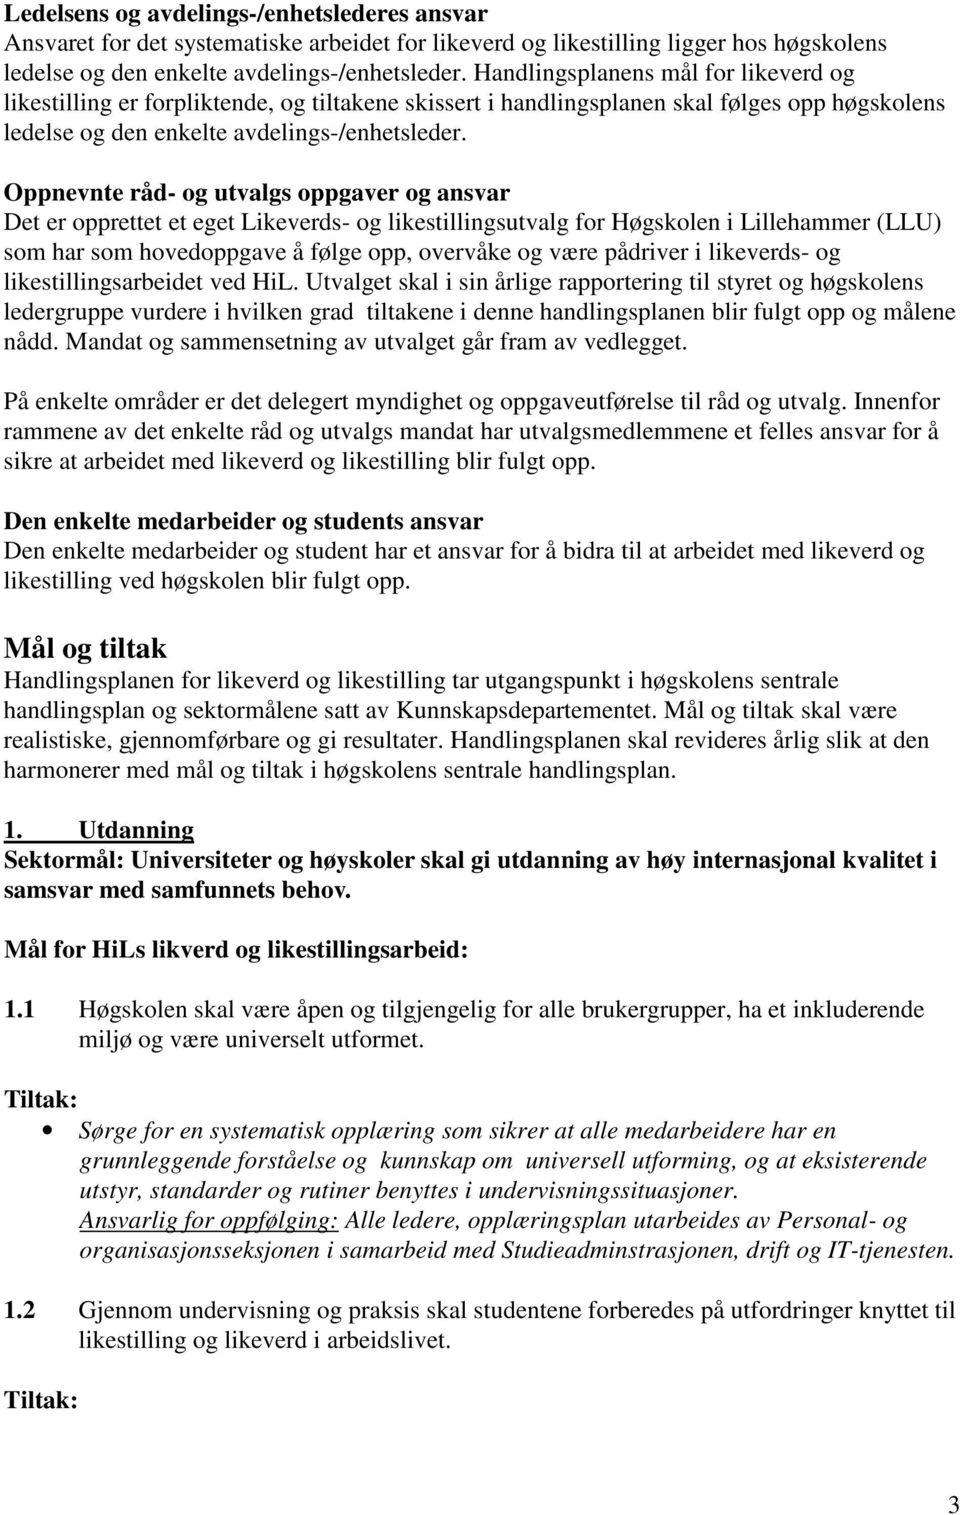 Oppnevnte råd- og utvalgs oppgaver og ansvar Det er opprettet et eget Likeverds- og likestillingsutvalg for Høgskolen i Lillehammer (LLU) som har som hovedoppgave å følge opp, overvåke og være